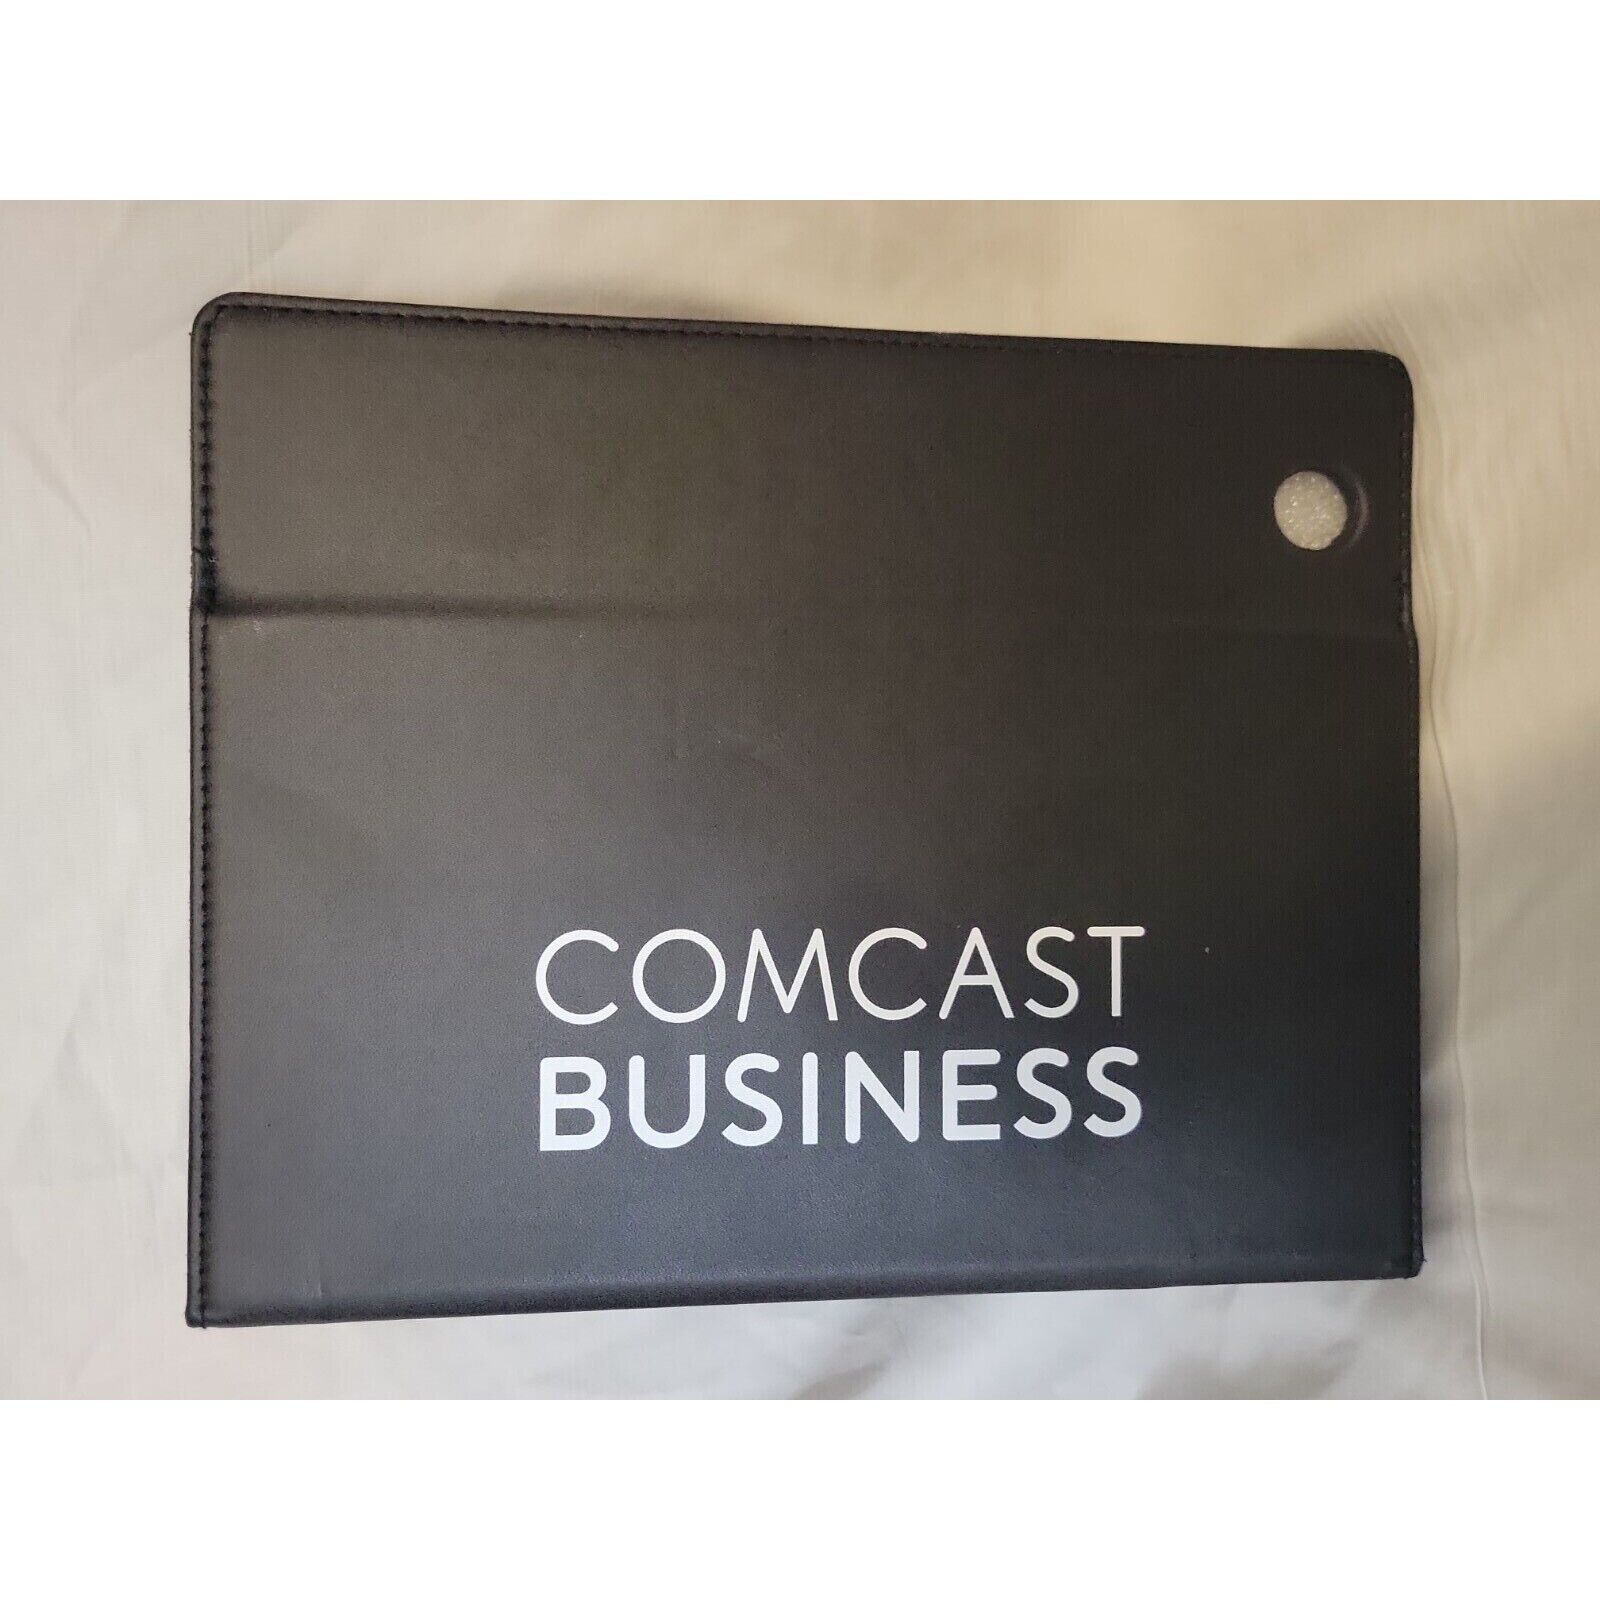 Comcast Business Callaway iPad Case Excellent Mint Condition Read Description